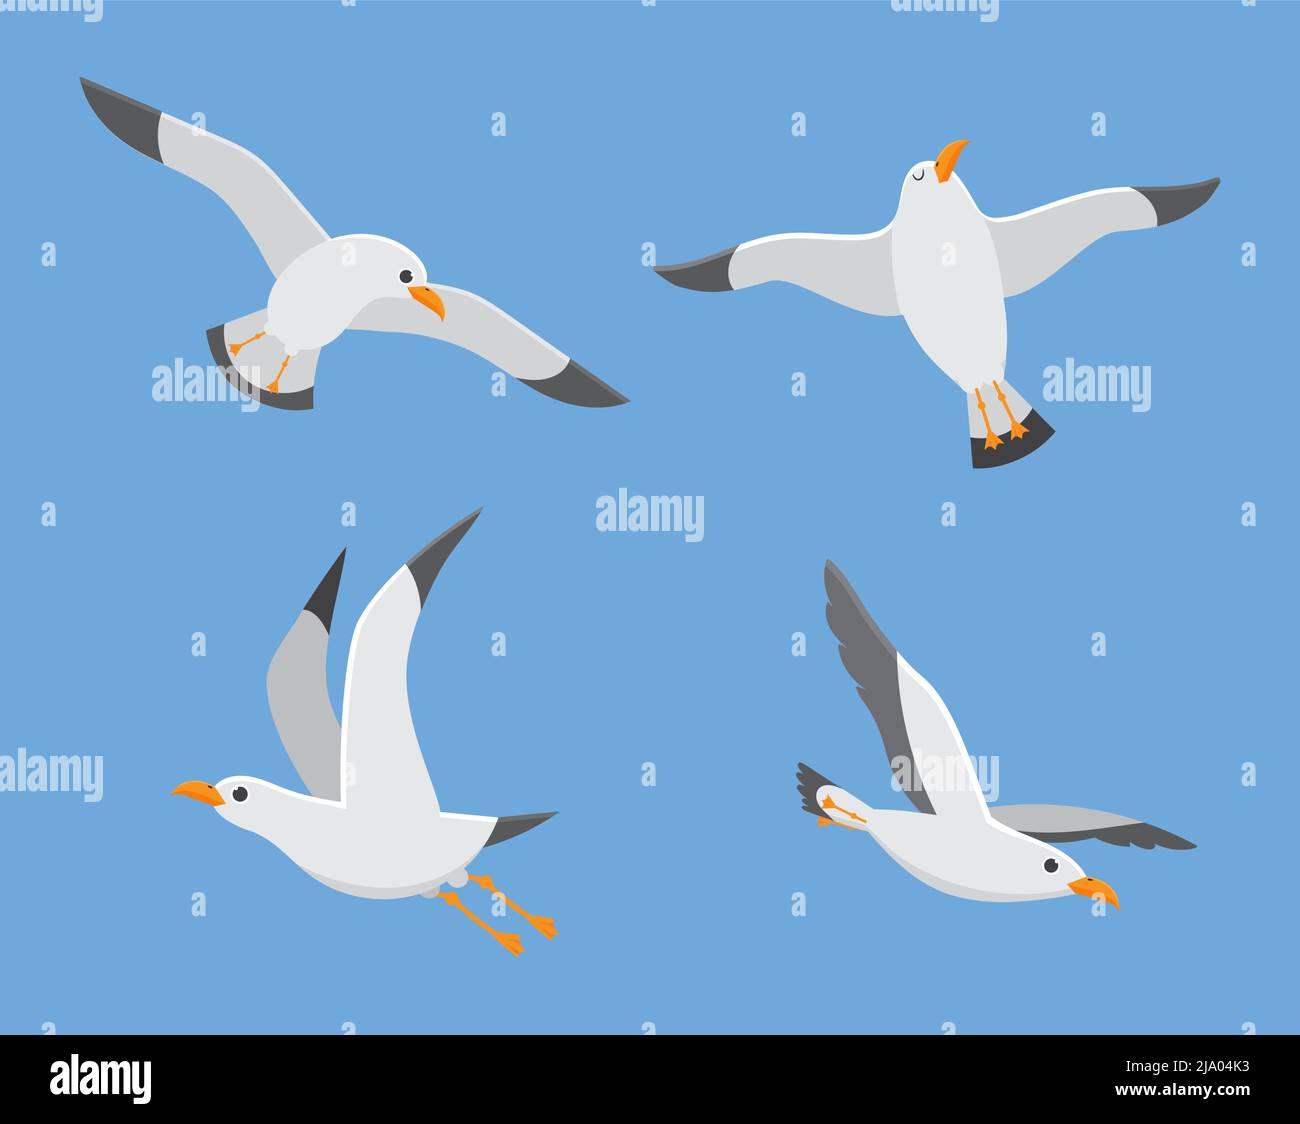 Oiseau de mer de l'Atlantique volent au ciel, ensemble de guette blanche Illustration de Vecteur